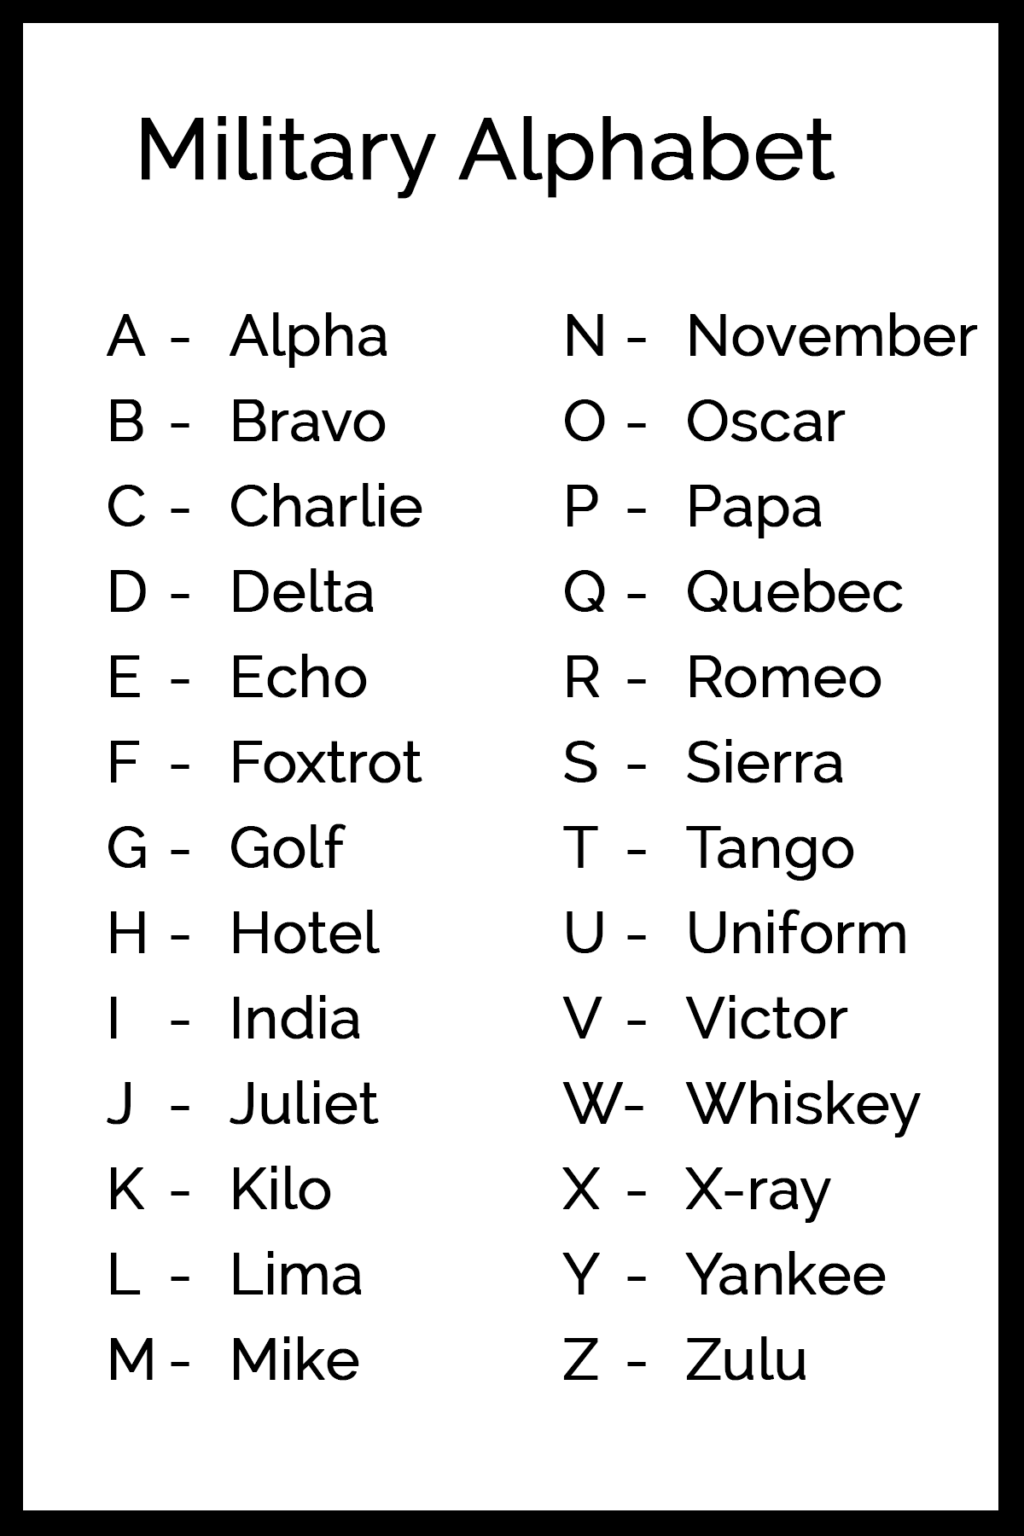 alphabet-army-code-names-military-alphabet